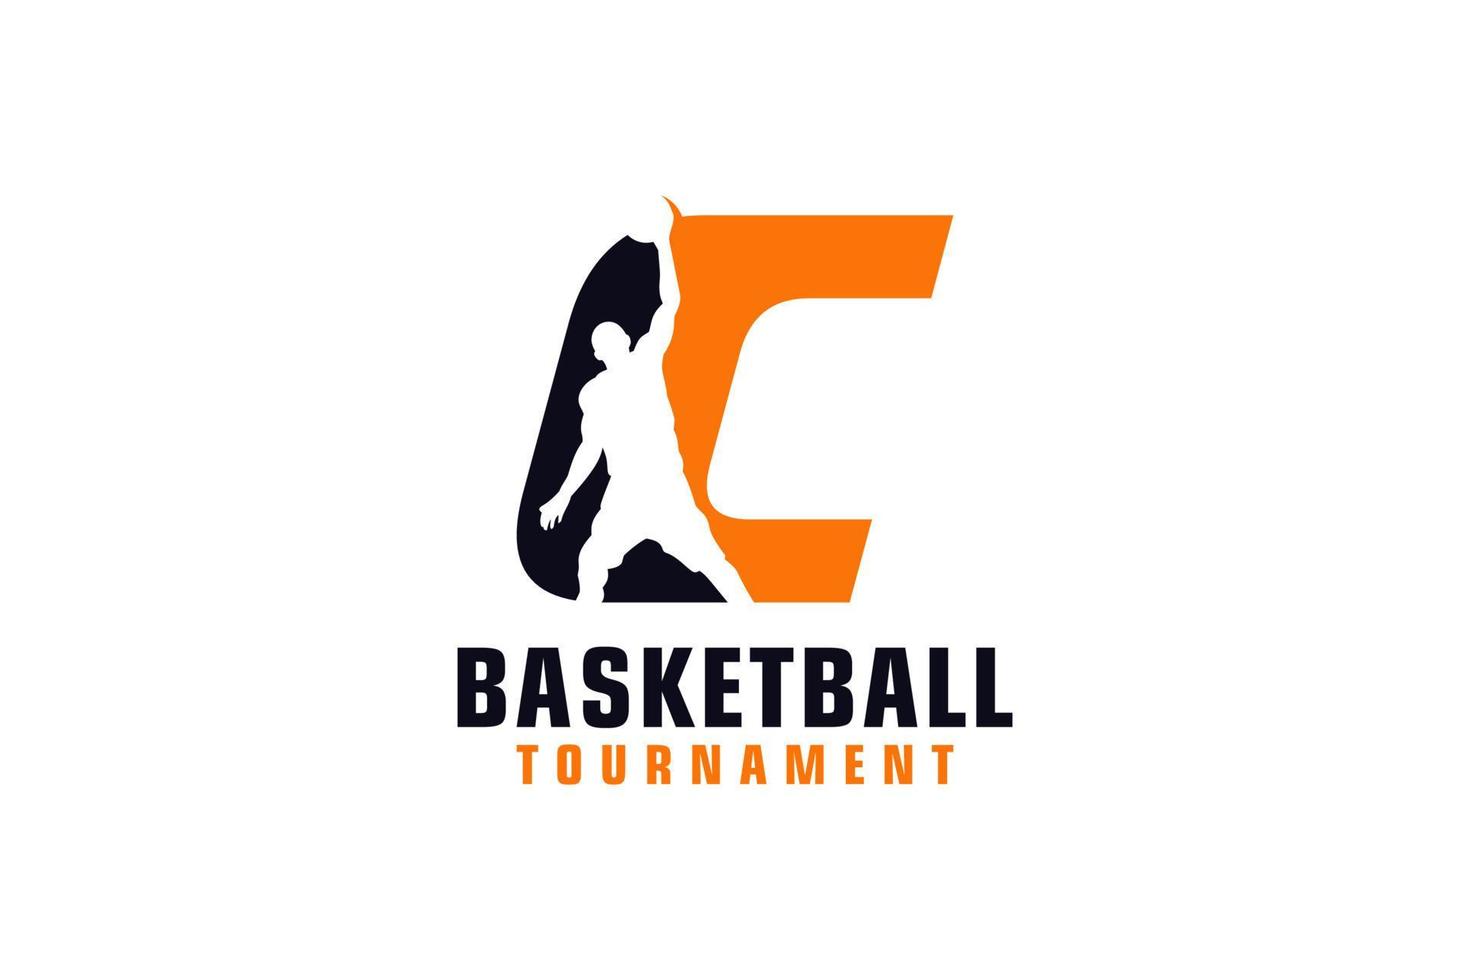 Buchstabe c mit Basketball-Logo-Design. Vektordesign-Vorlagenelemente für Sportteams oder Corporate Identity. vektor